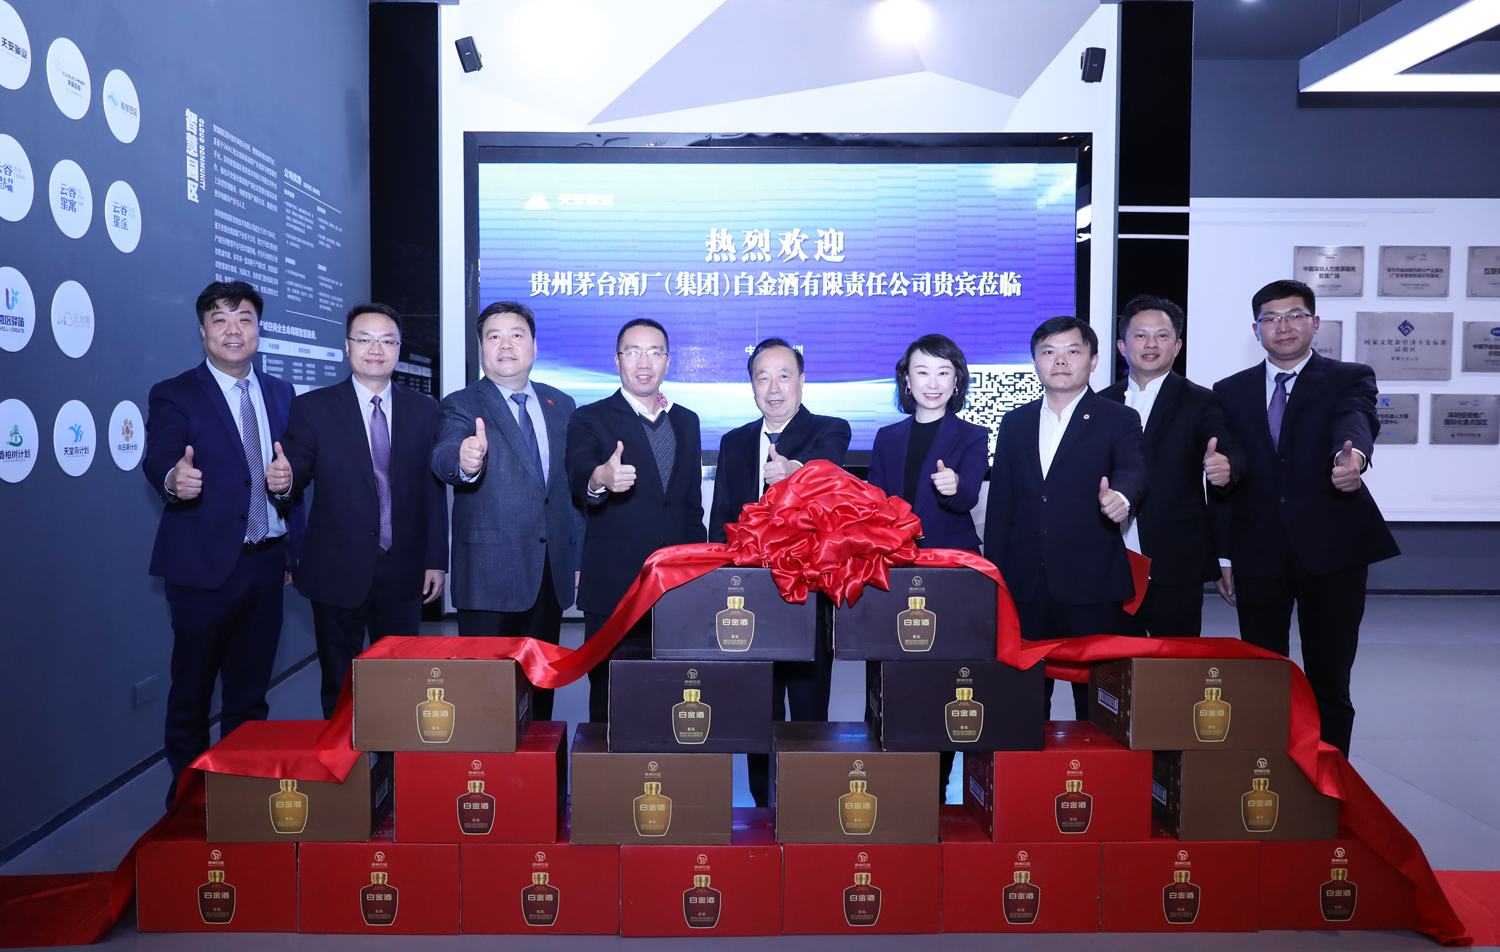 跨界整合 共谋发展丨白金酒公司参访深圳天安骏业投资发展集团